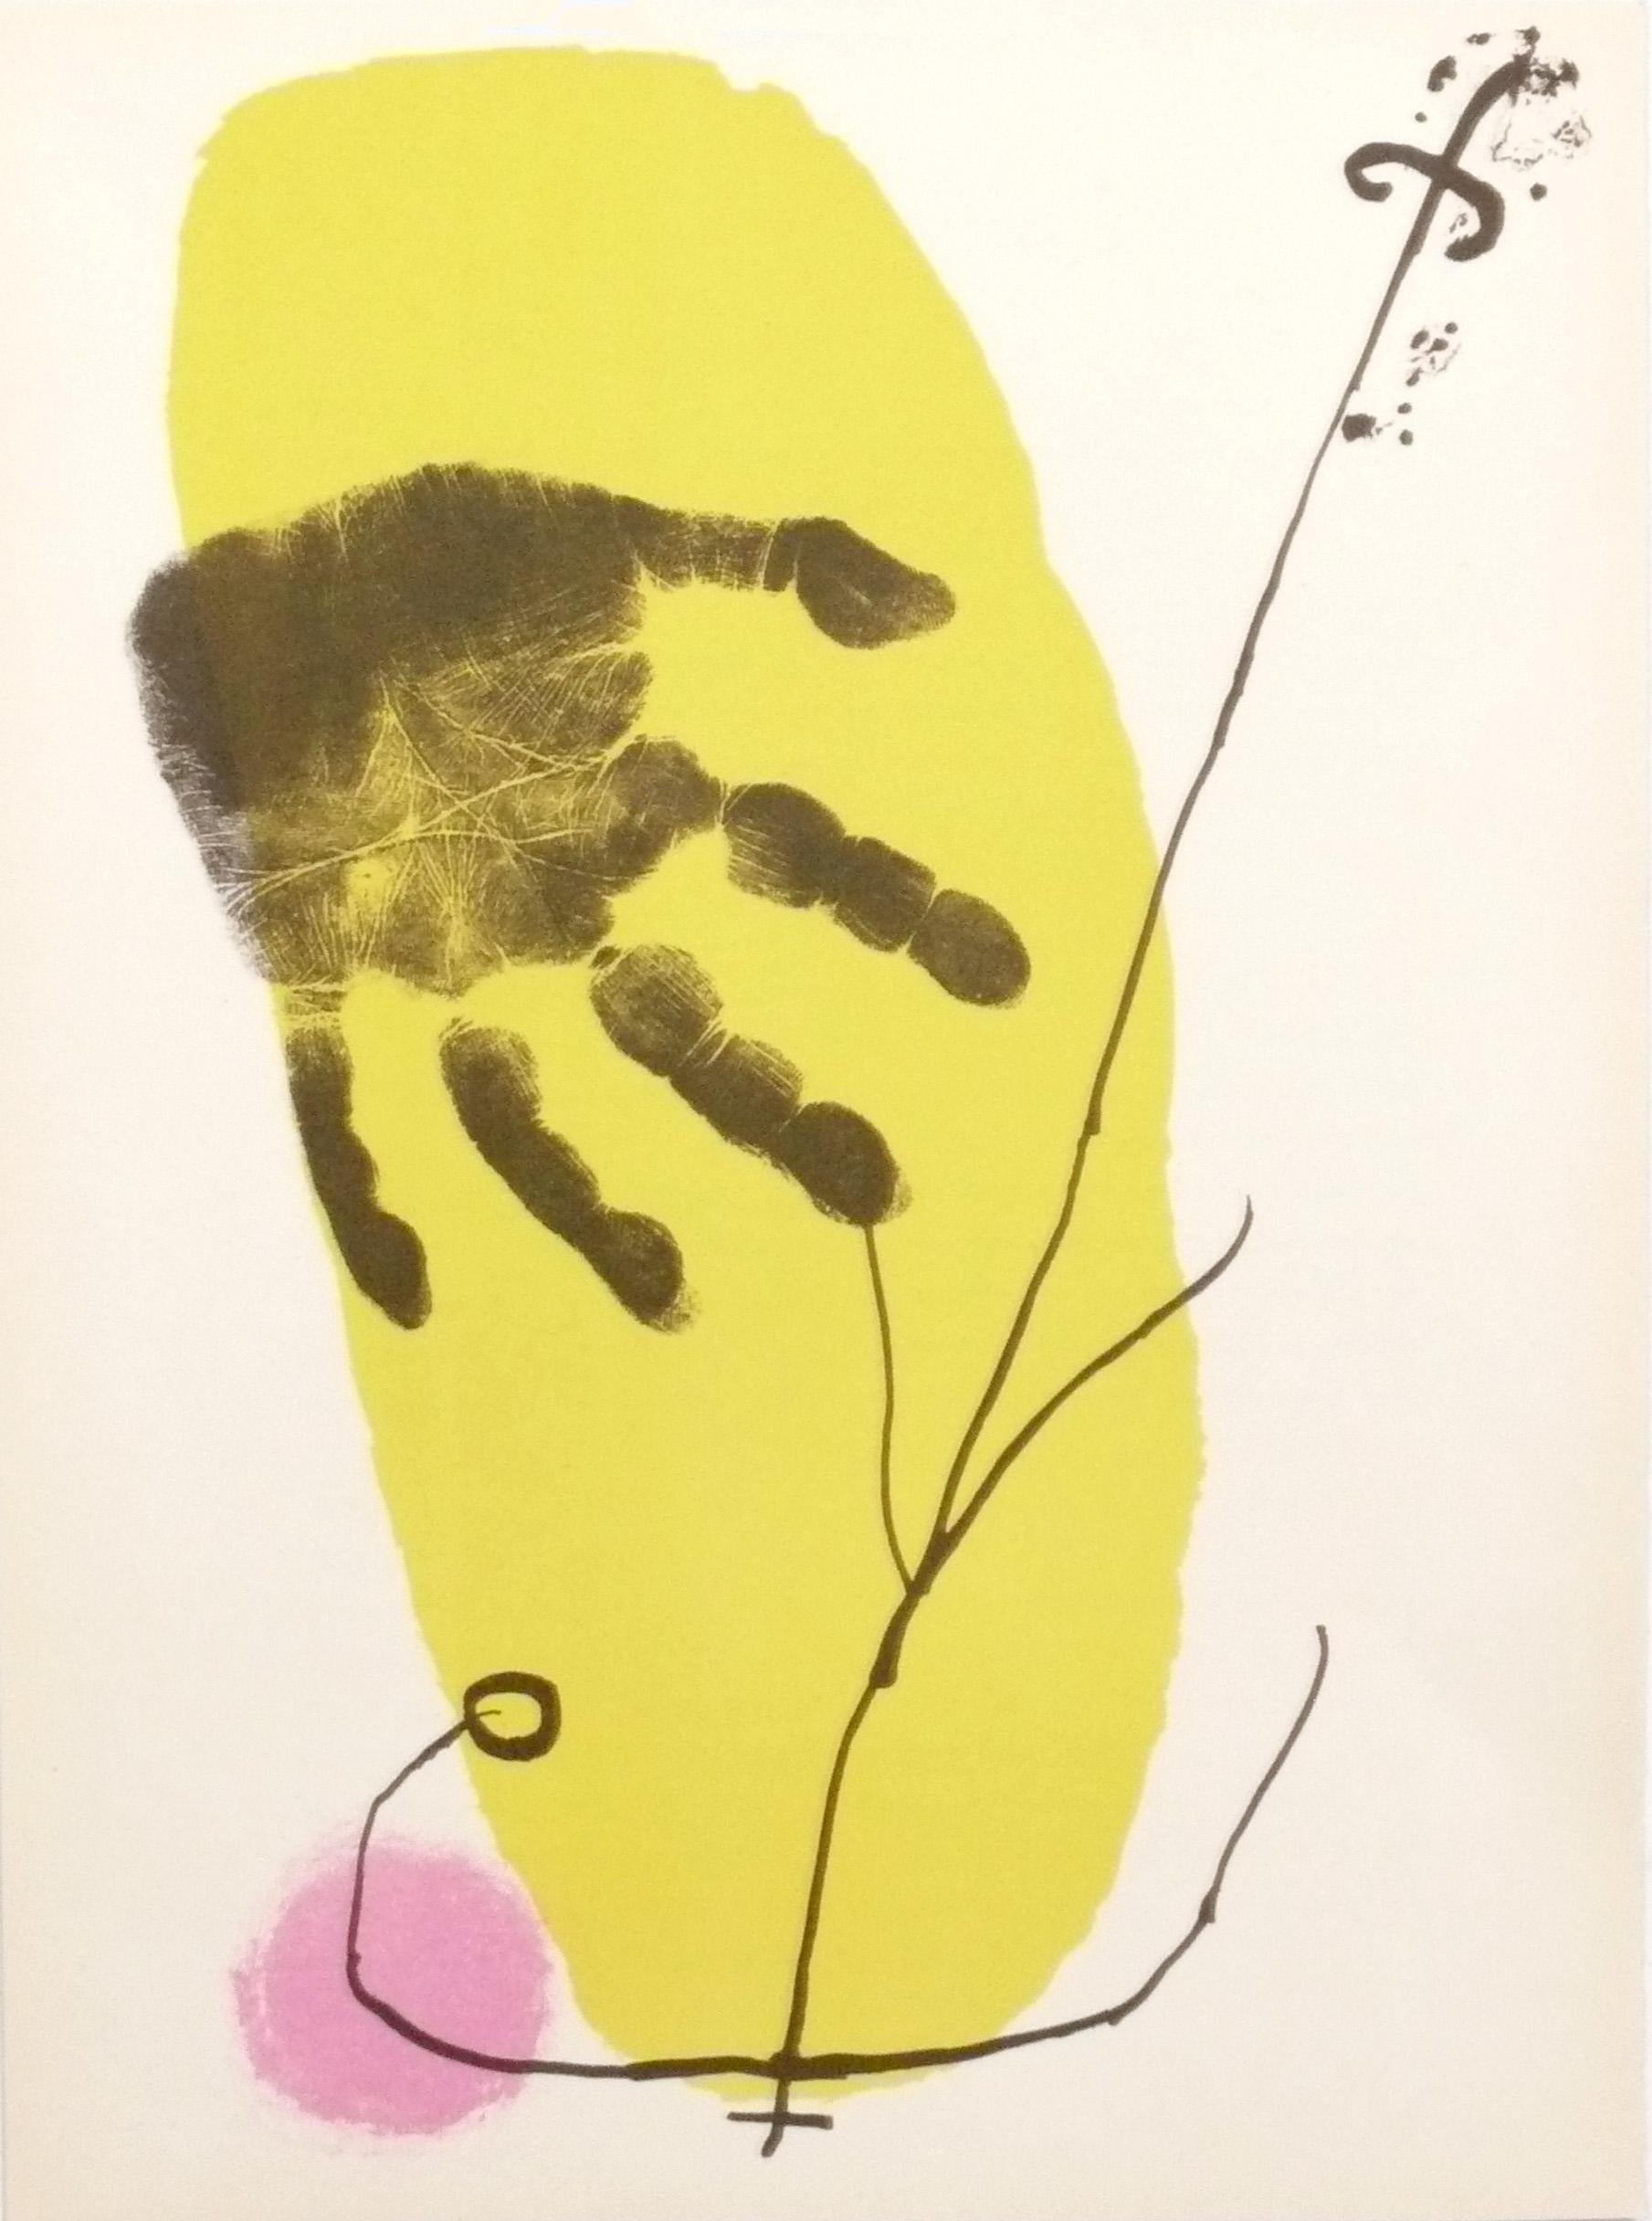 Sélection de lithographies en couleur de Joan Miro, françaises, vers les années 1960. Elles sont extraites de l'édition limitée 